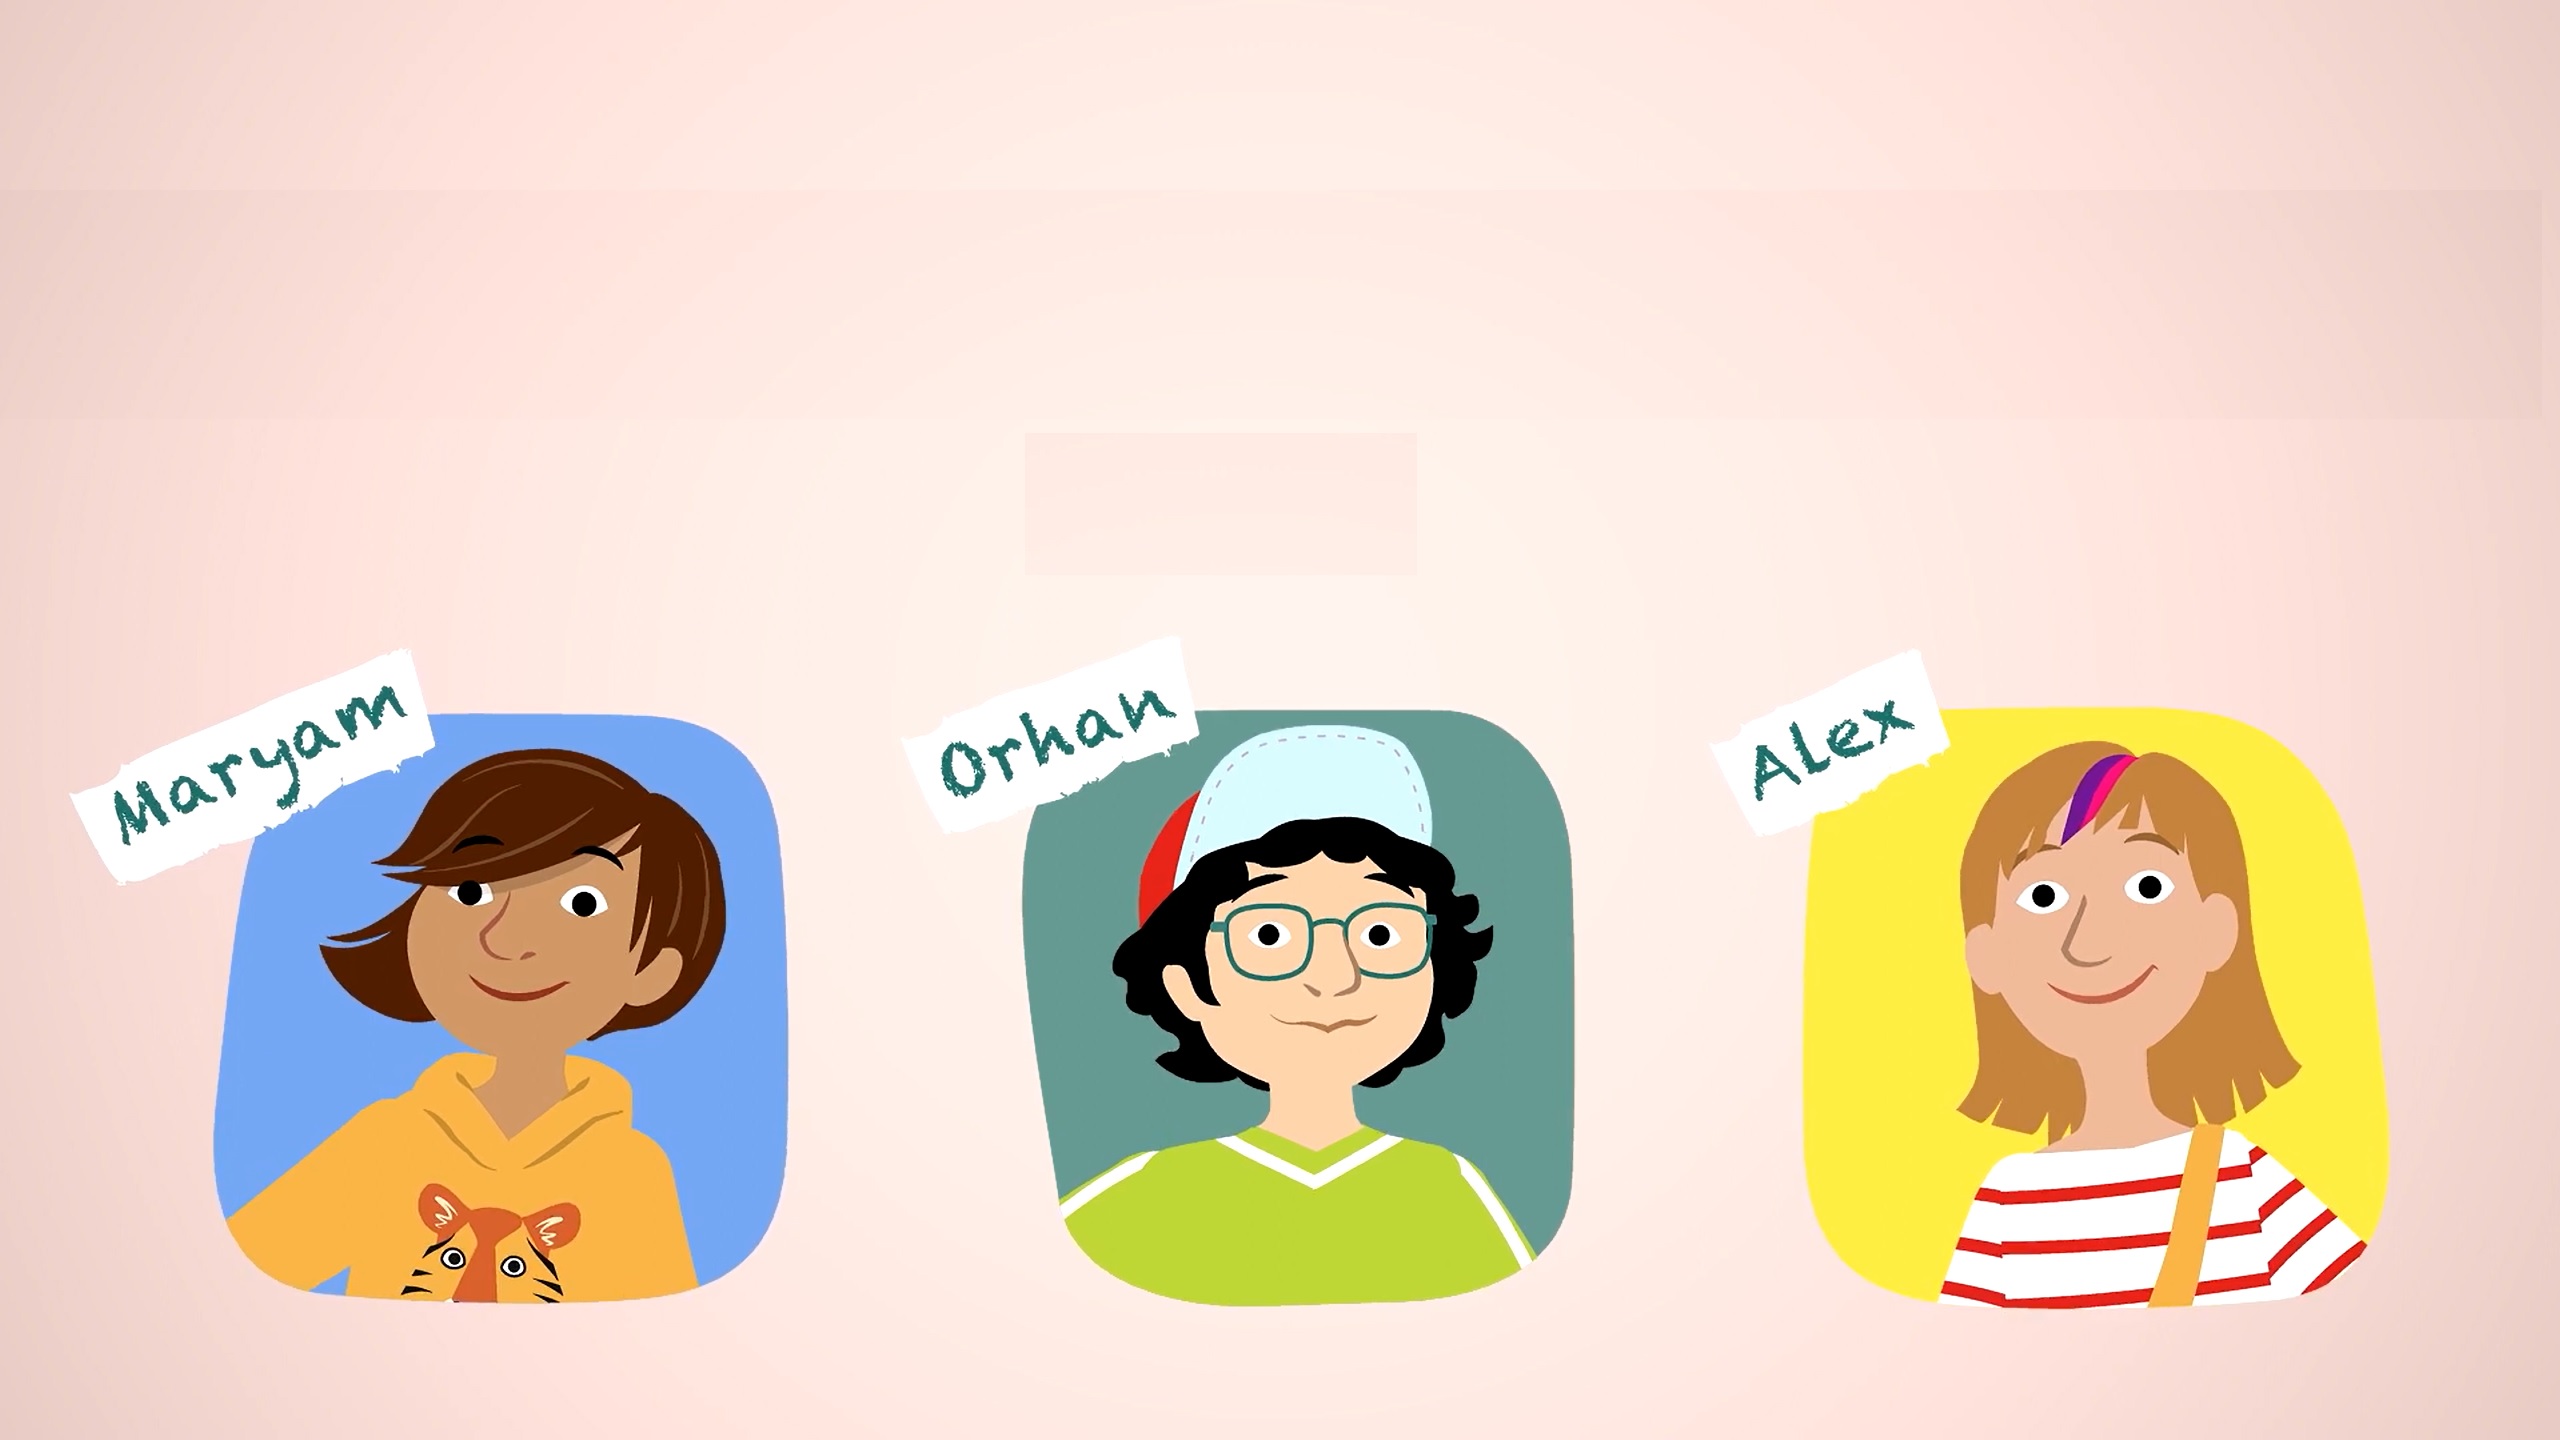 Auf dem Bild sieht man Bilder von drei Kindern Maryam, Orhan, Alex, alle im Comicstil gehalten. Das Bild gehört zum Beitrag Geschichten die bewegen